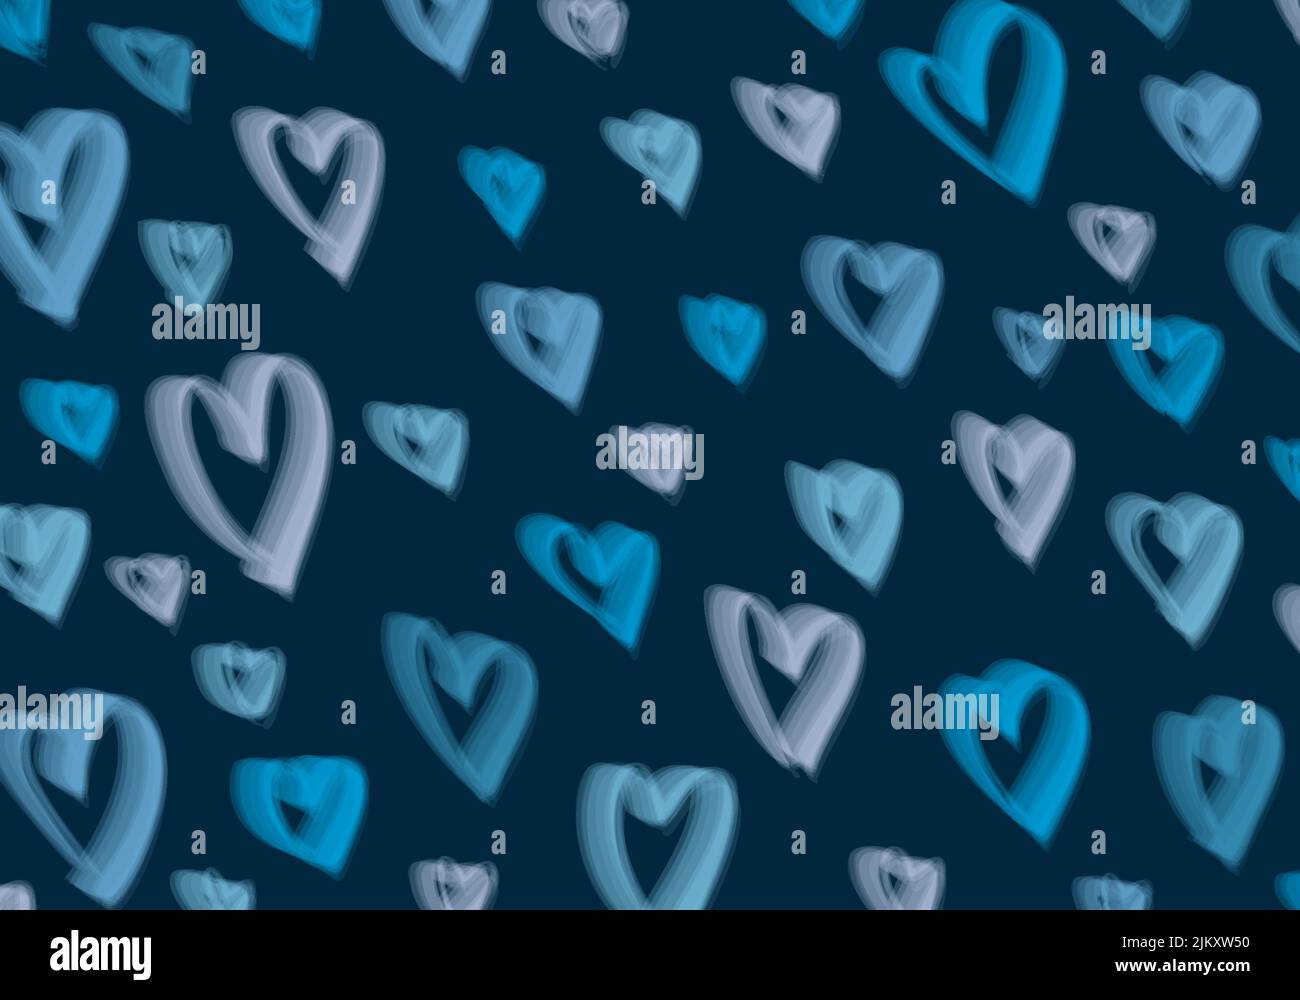 Stile astratto a cuore blu e bianco della sagoma di San Valentino. Grafica sovrapposta decorativo sfondo moderno. Vettore Illustrazione Vettoriale